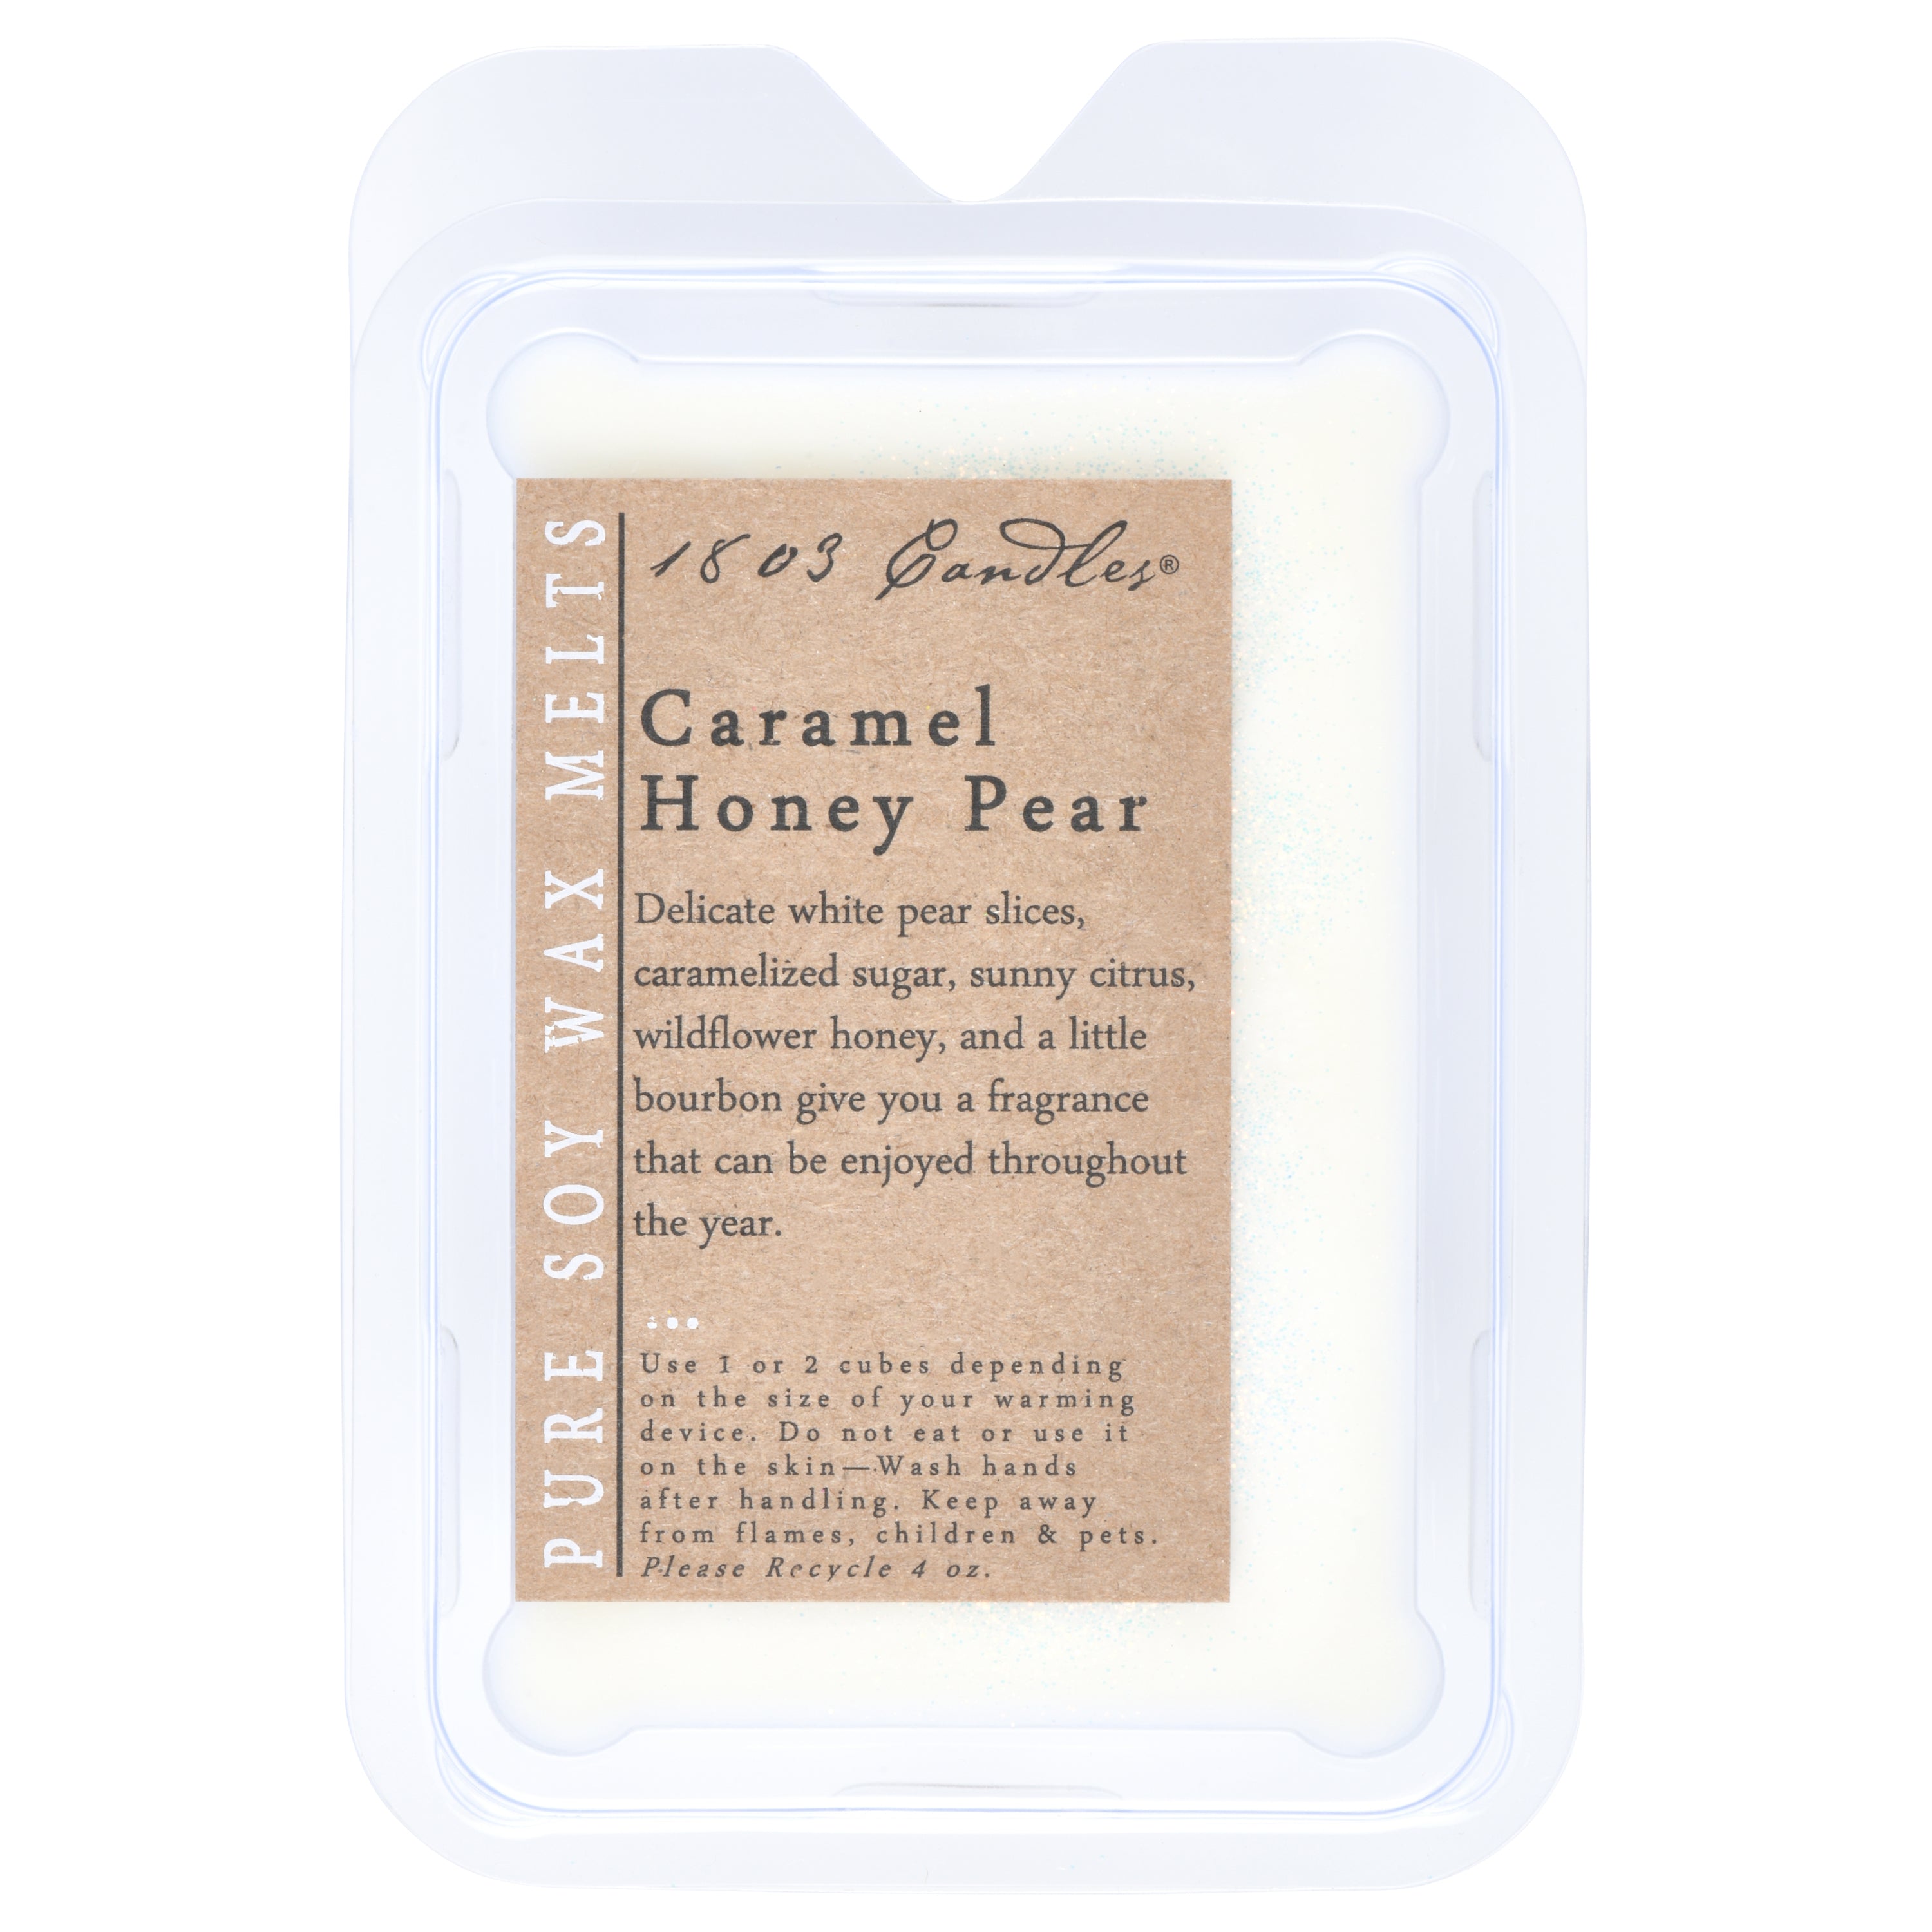 1803 Candles- Melt - Caramel Honey Pear